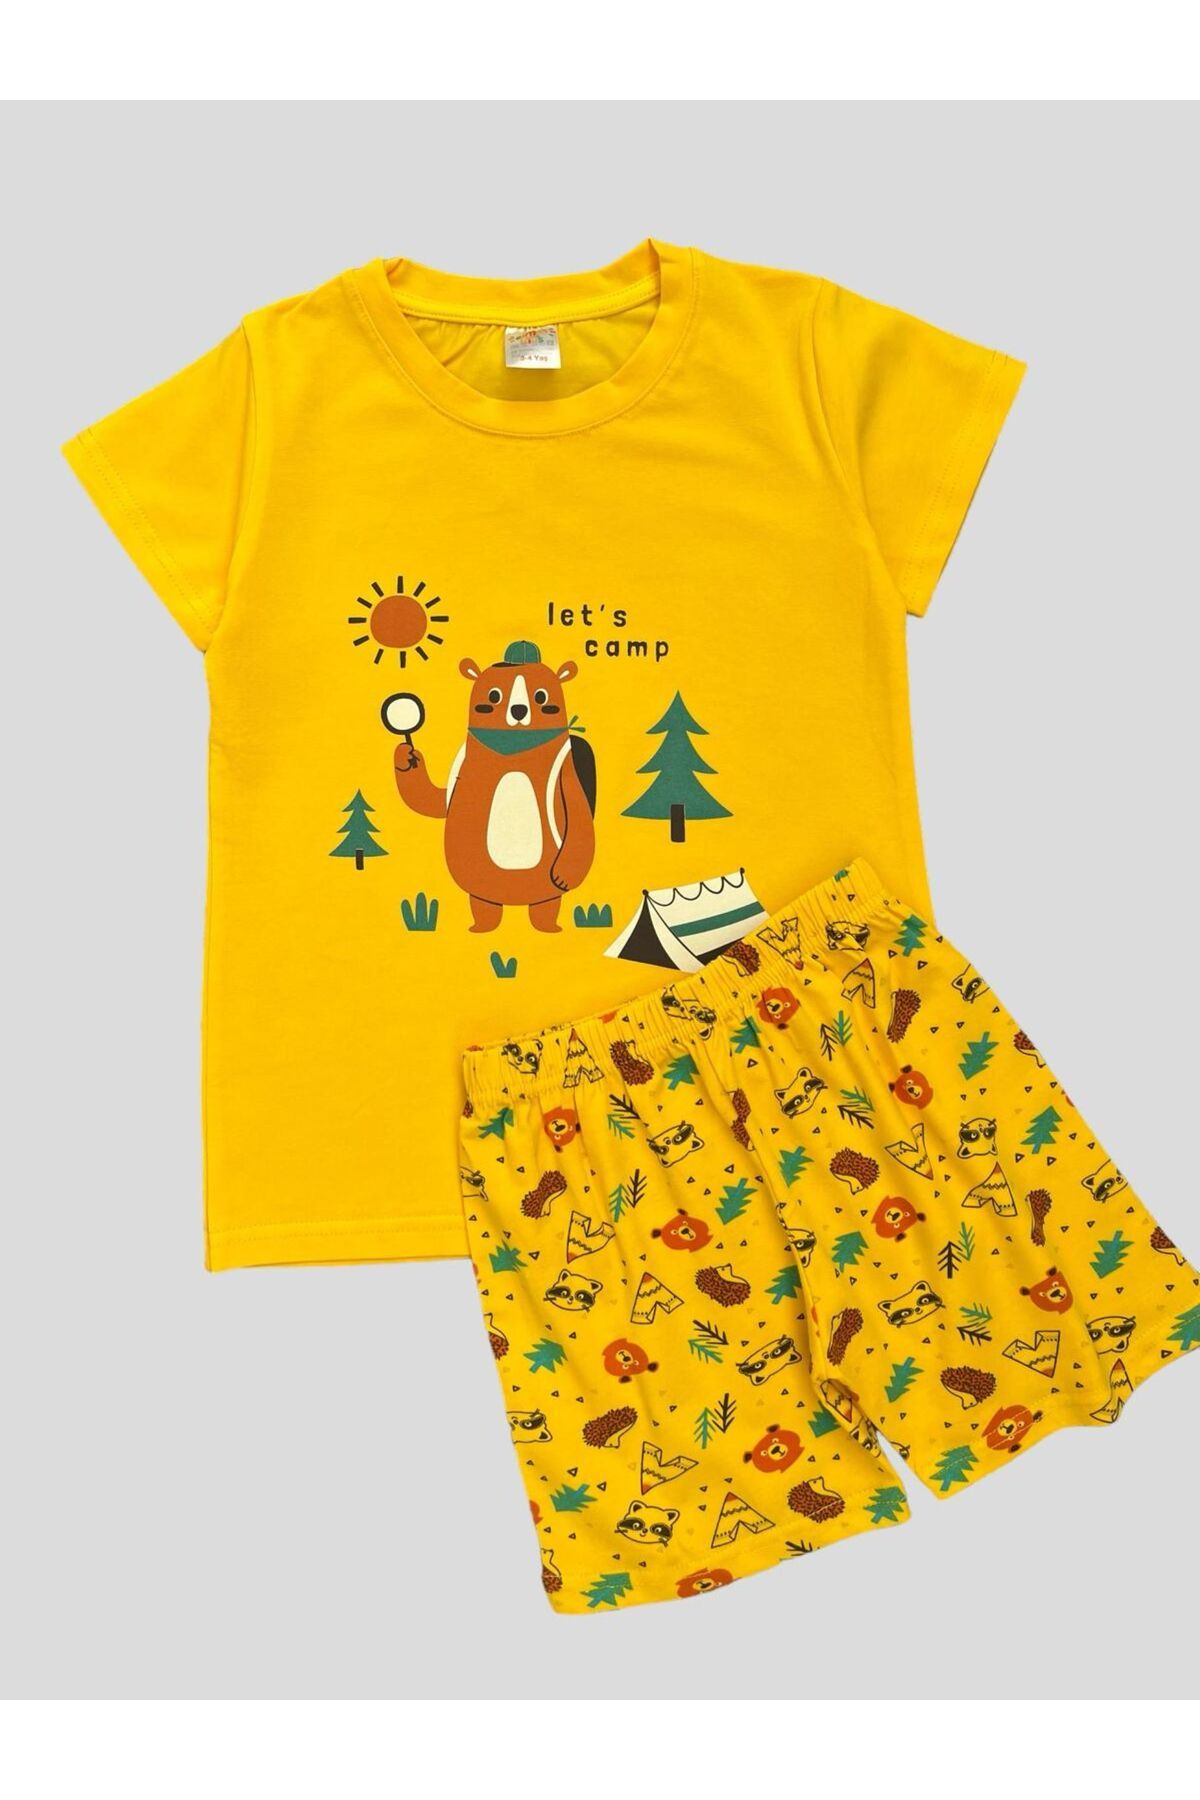 elmas kids Erkek Çocuk %100 Pamuklu Ayıcık Çadır Çam Desenli Kısa Kollu Şortlu Sarı Yazlık Pijama Takımı